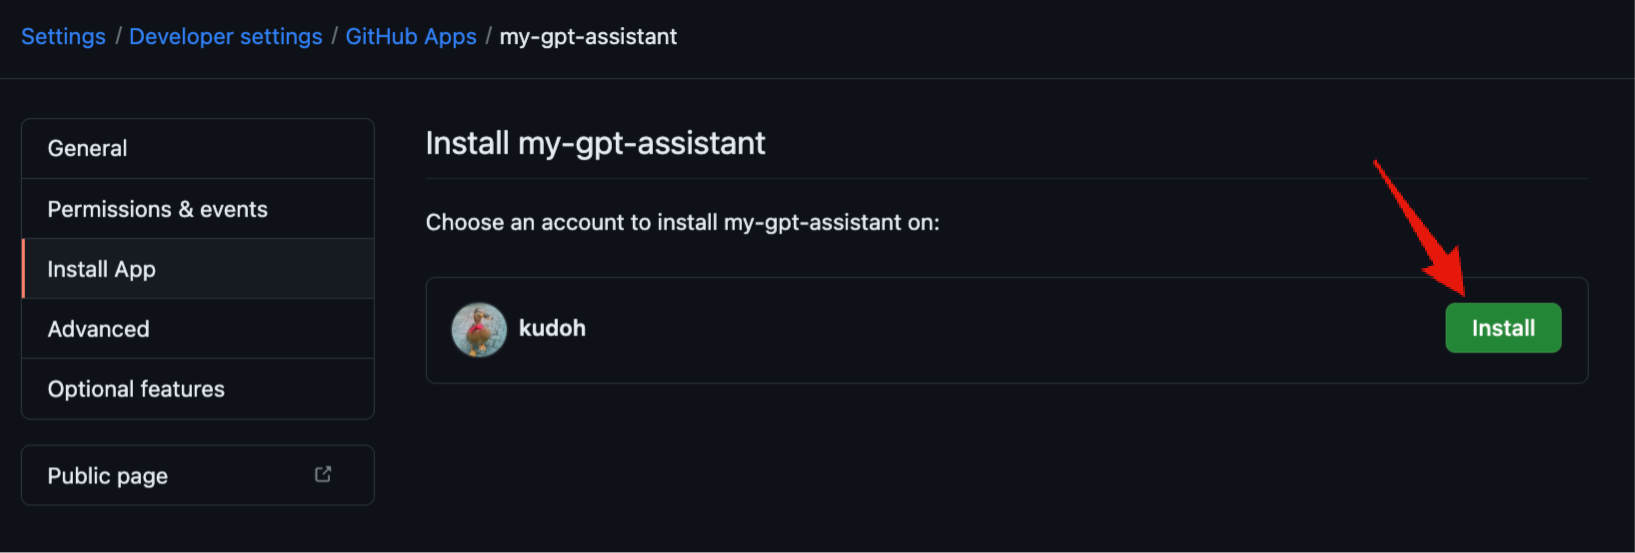 GitHub App - Install